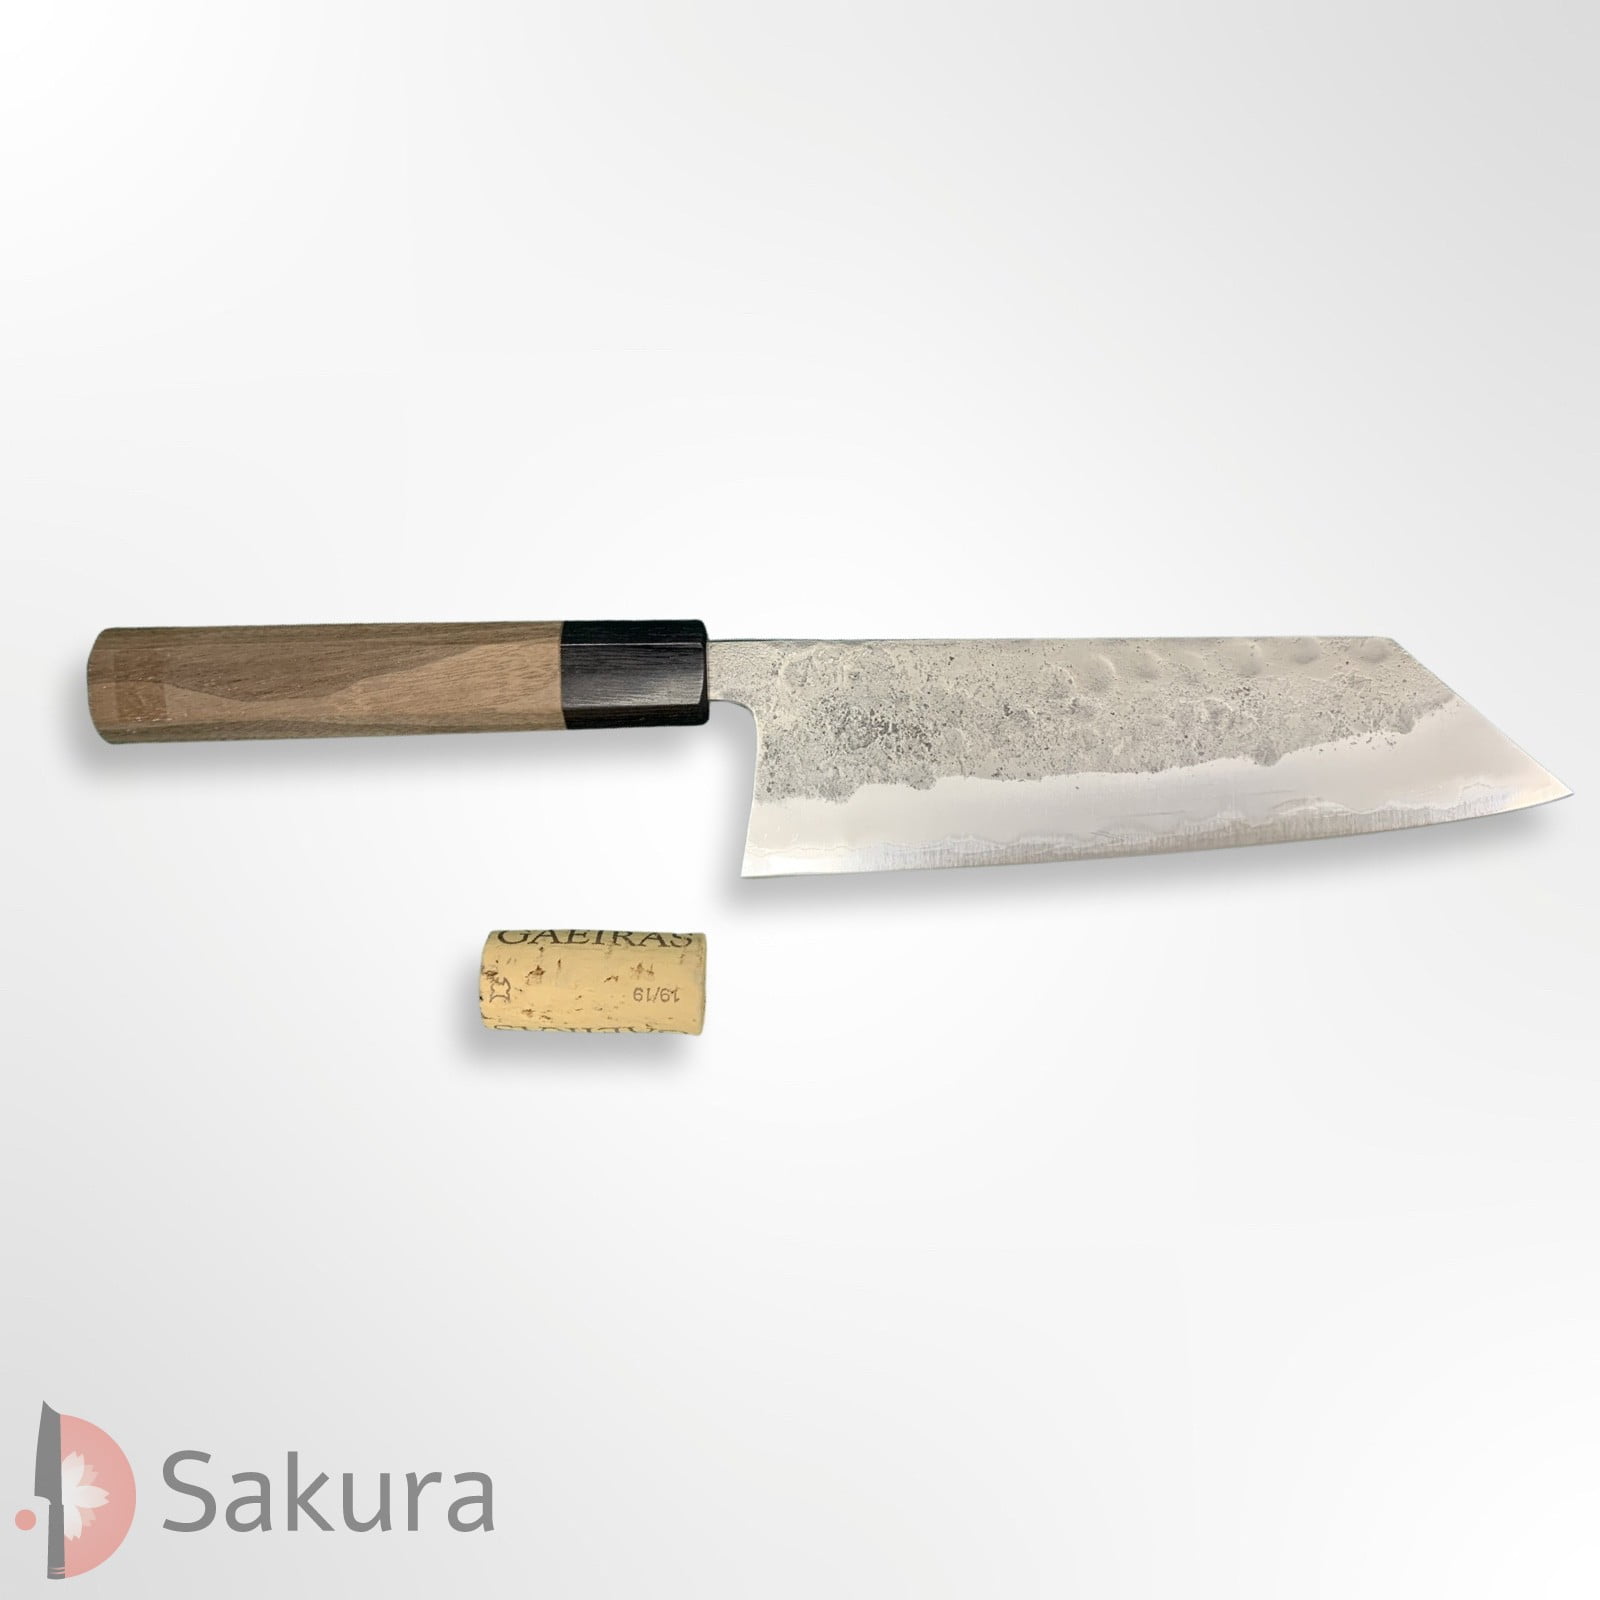 סכין רב-תכליתית בּוּנְקָה 180מ״מ מחושלת בעבודת יד 3 שכבות: פלדת פחמן יפנית מתקדמת מסוג Aogami#2 עטופה פלדת אל-חלד  גימור מט חיספוס טבעי מאצוברה יפן – SKMATSTKKNBB18042